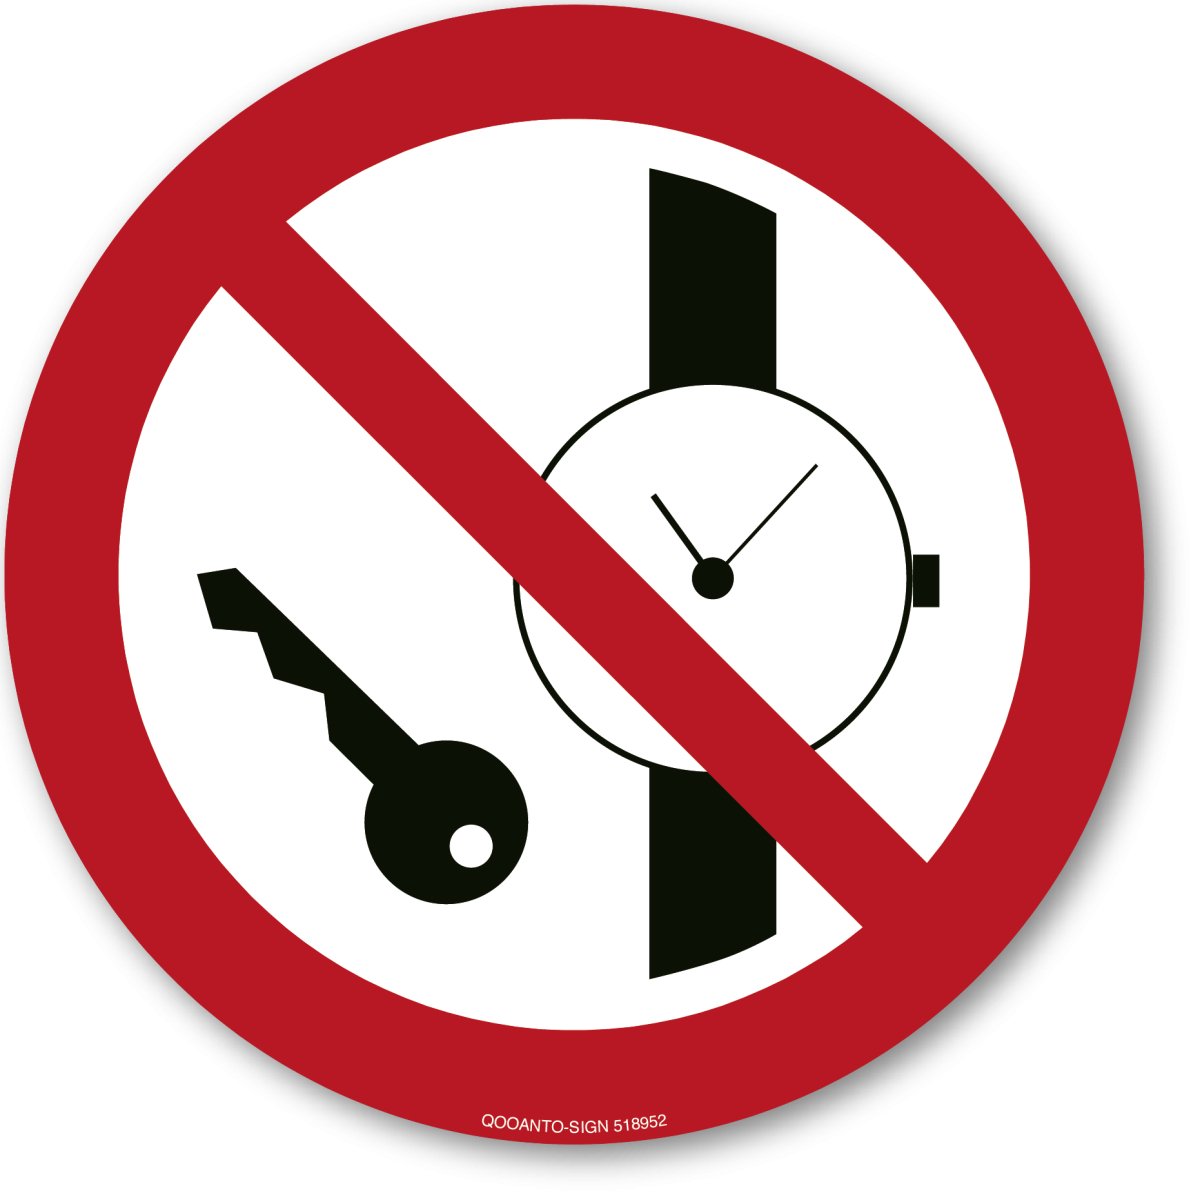 Wegweiser Schild oder Aufkleber, Mitführen Von Metallteilen Oder Uhren Verboten, aus Alu-Verbund oder Selbstklebefolie mit UV-Schutz - QOOANTO-SIGN